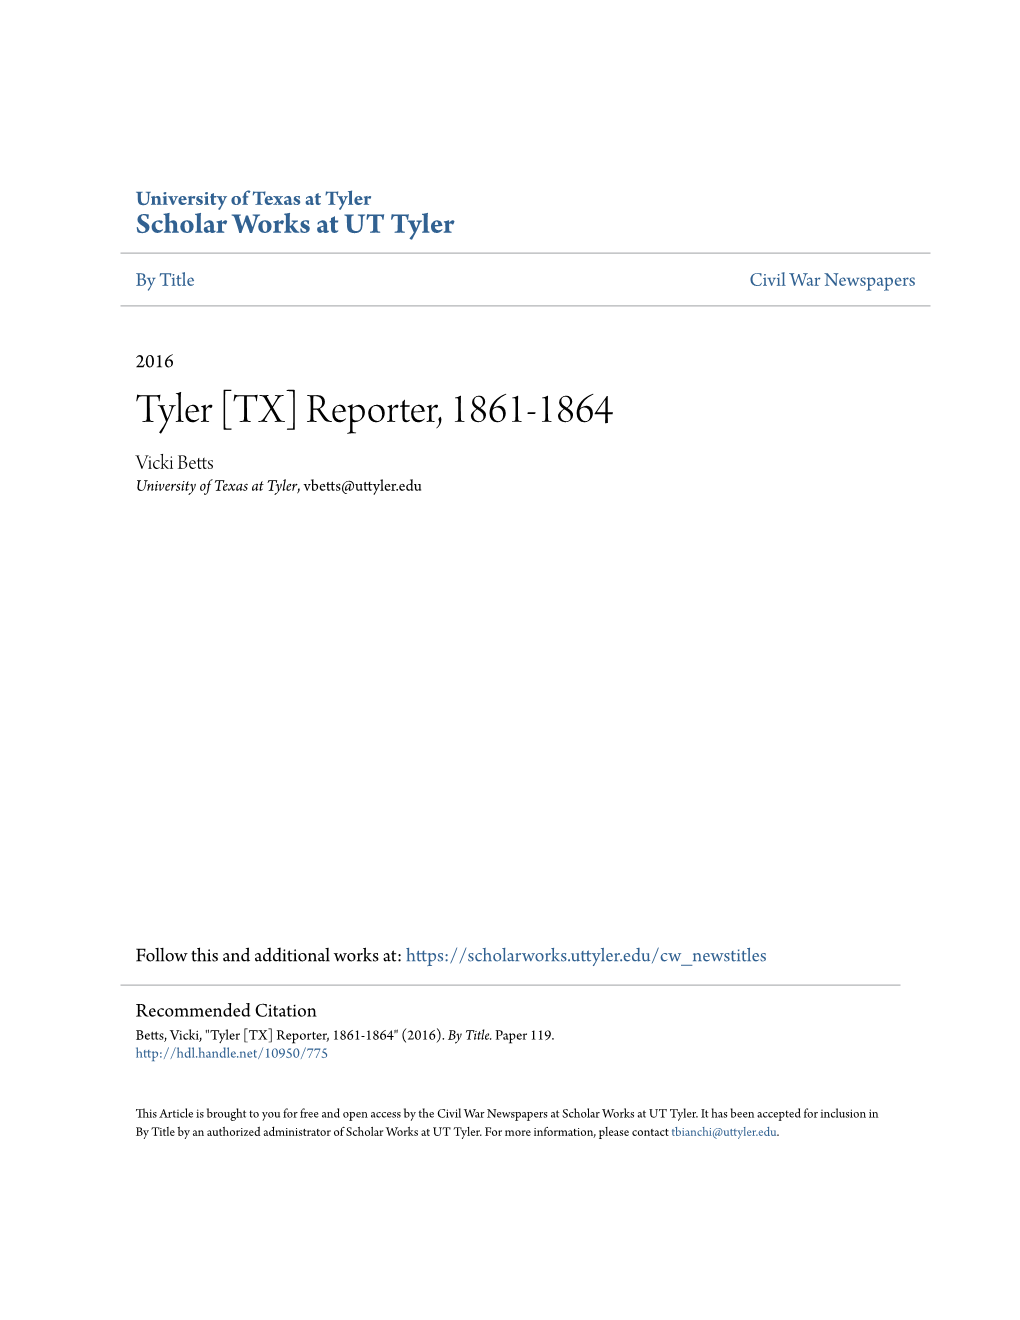 Tyler [TX] Reporter, 1861-1864 Vicki Betts University of Texas at Tyler, Vbetts@Uttyler.Edu